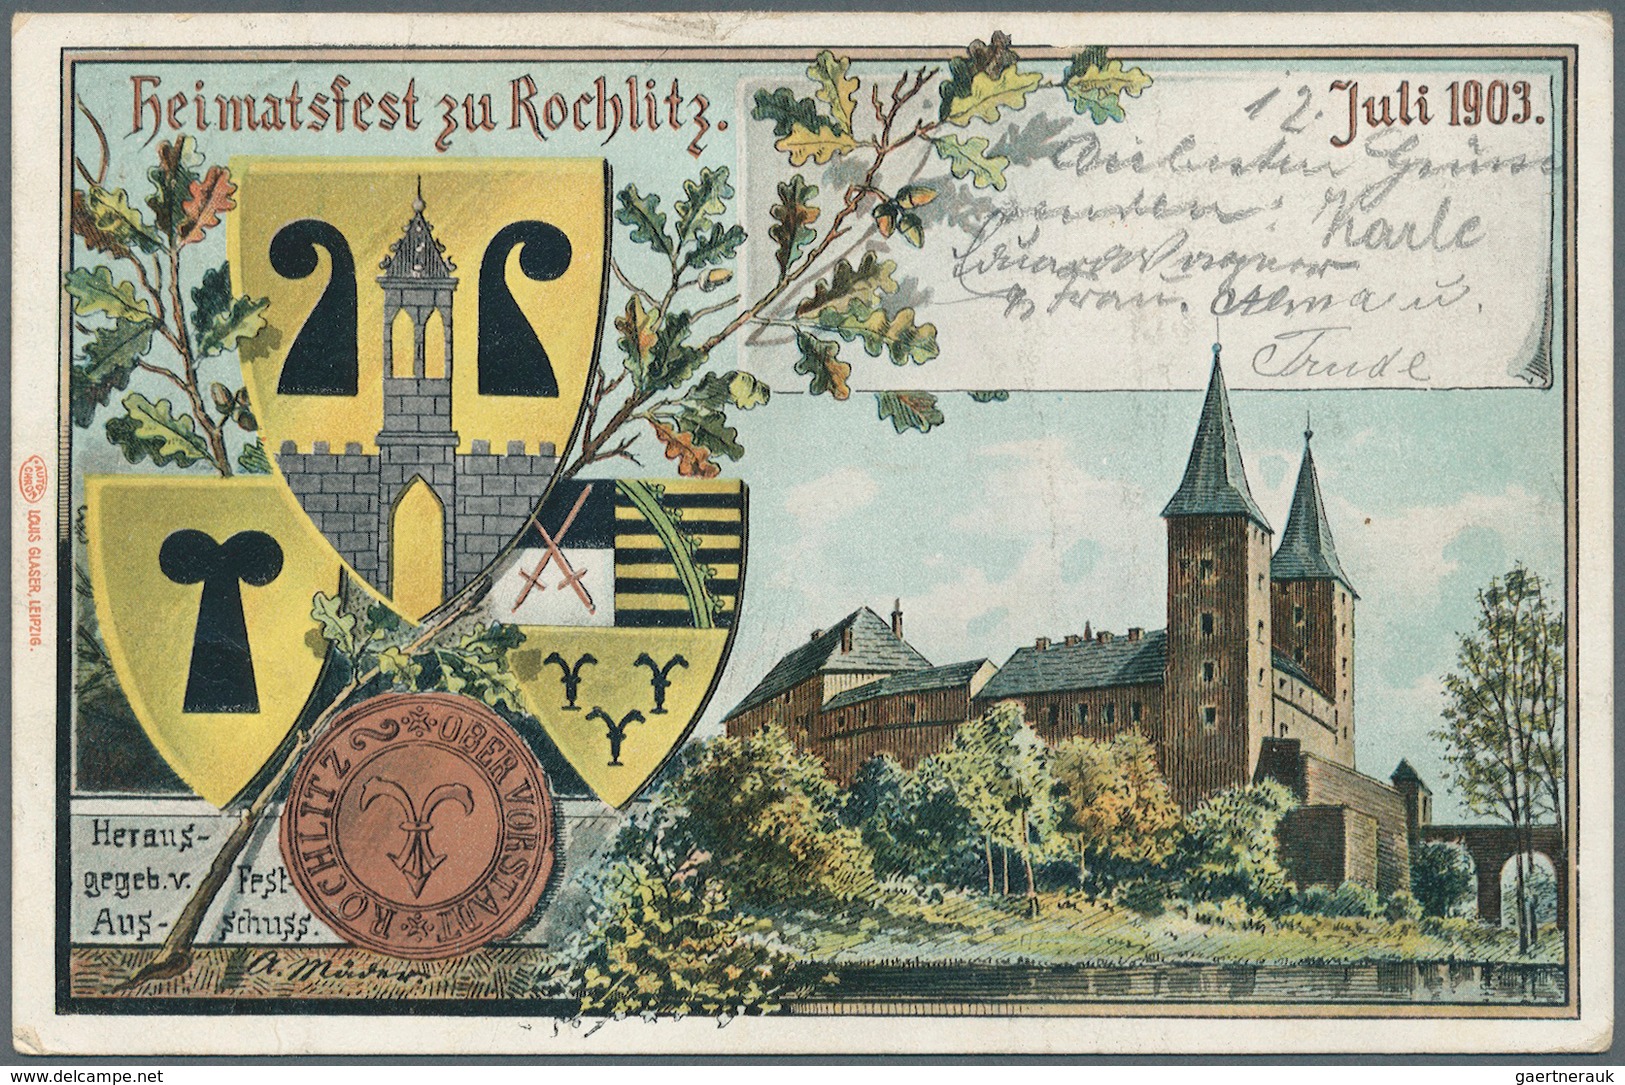 Deutsches Reich - Privatganzsachen: 1890/1914 ca., PRIVATGANZSACHEN, gehaltvolle Sammlung mit ca. 20